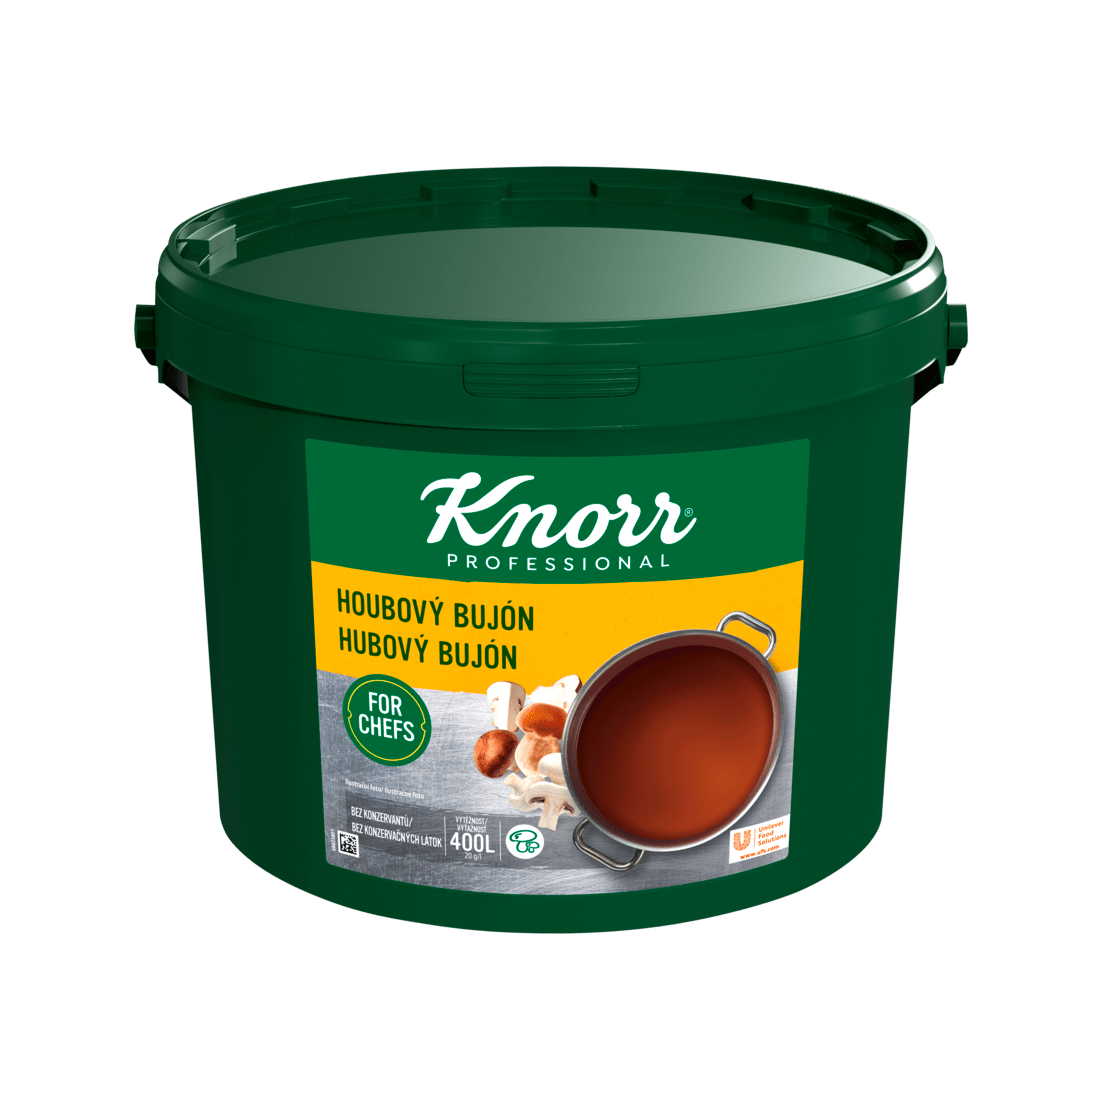 KNORR Professional Houbový bujón 8 kg - 